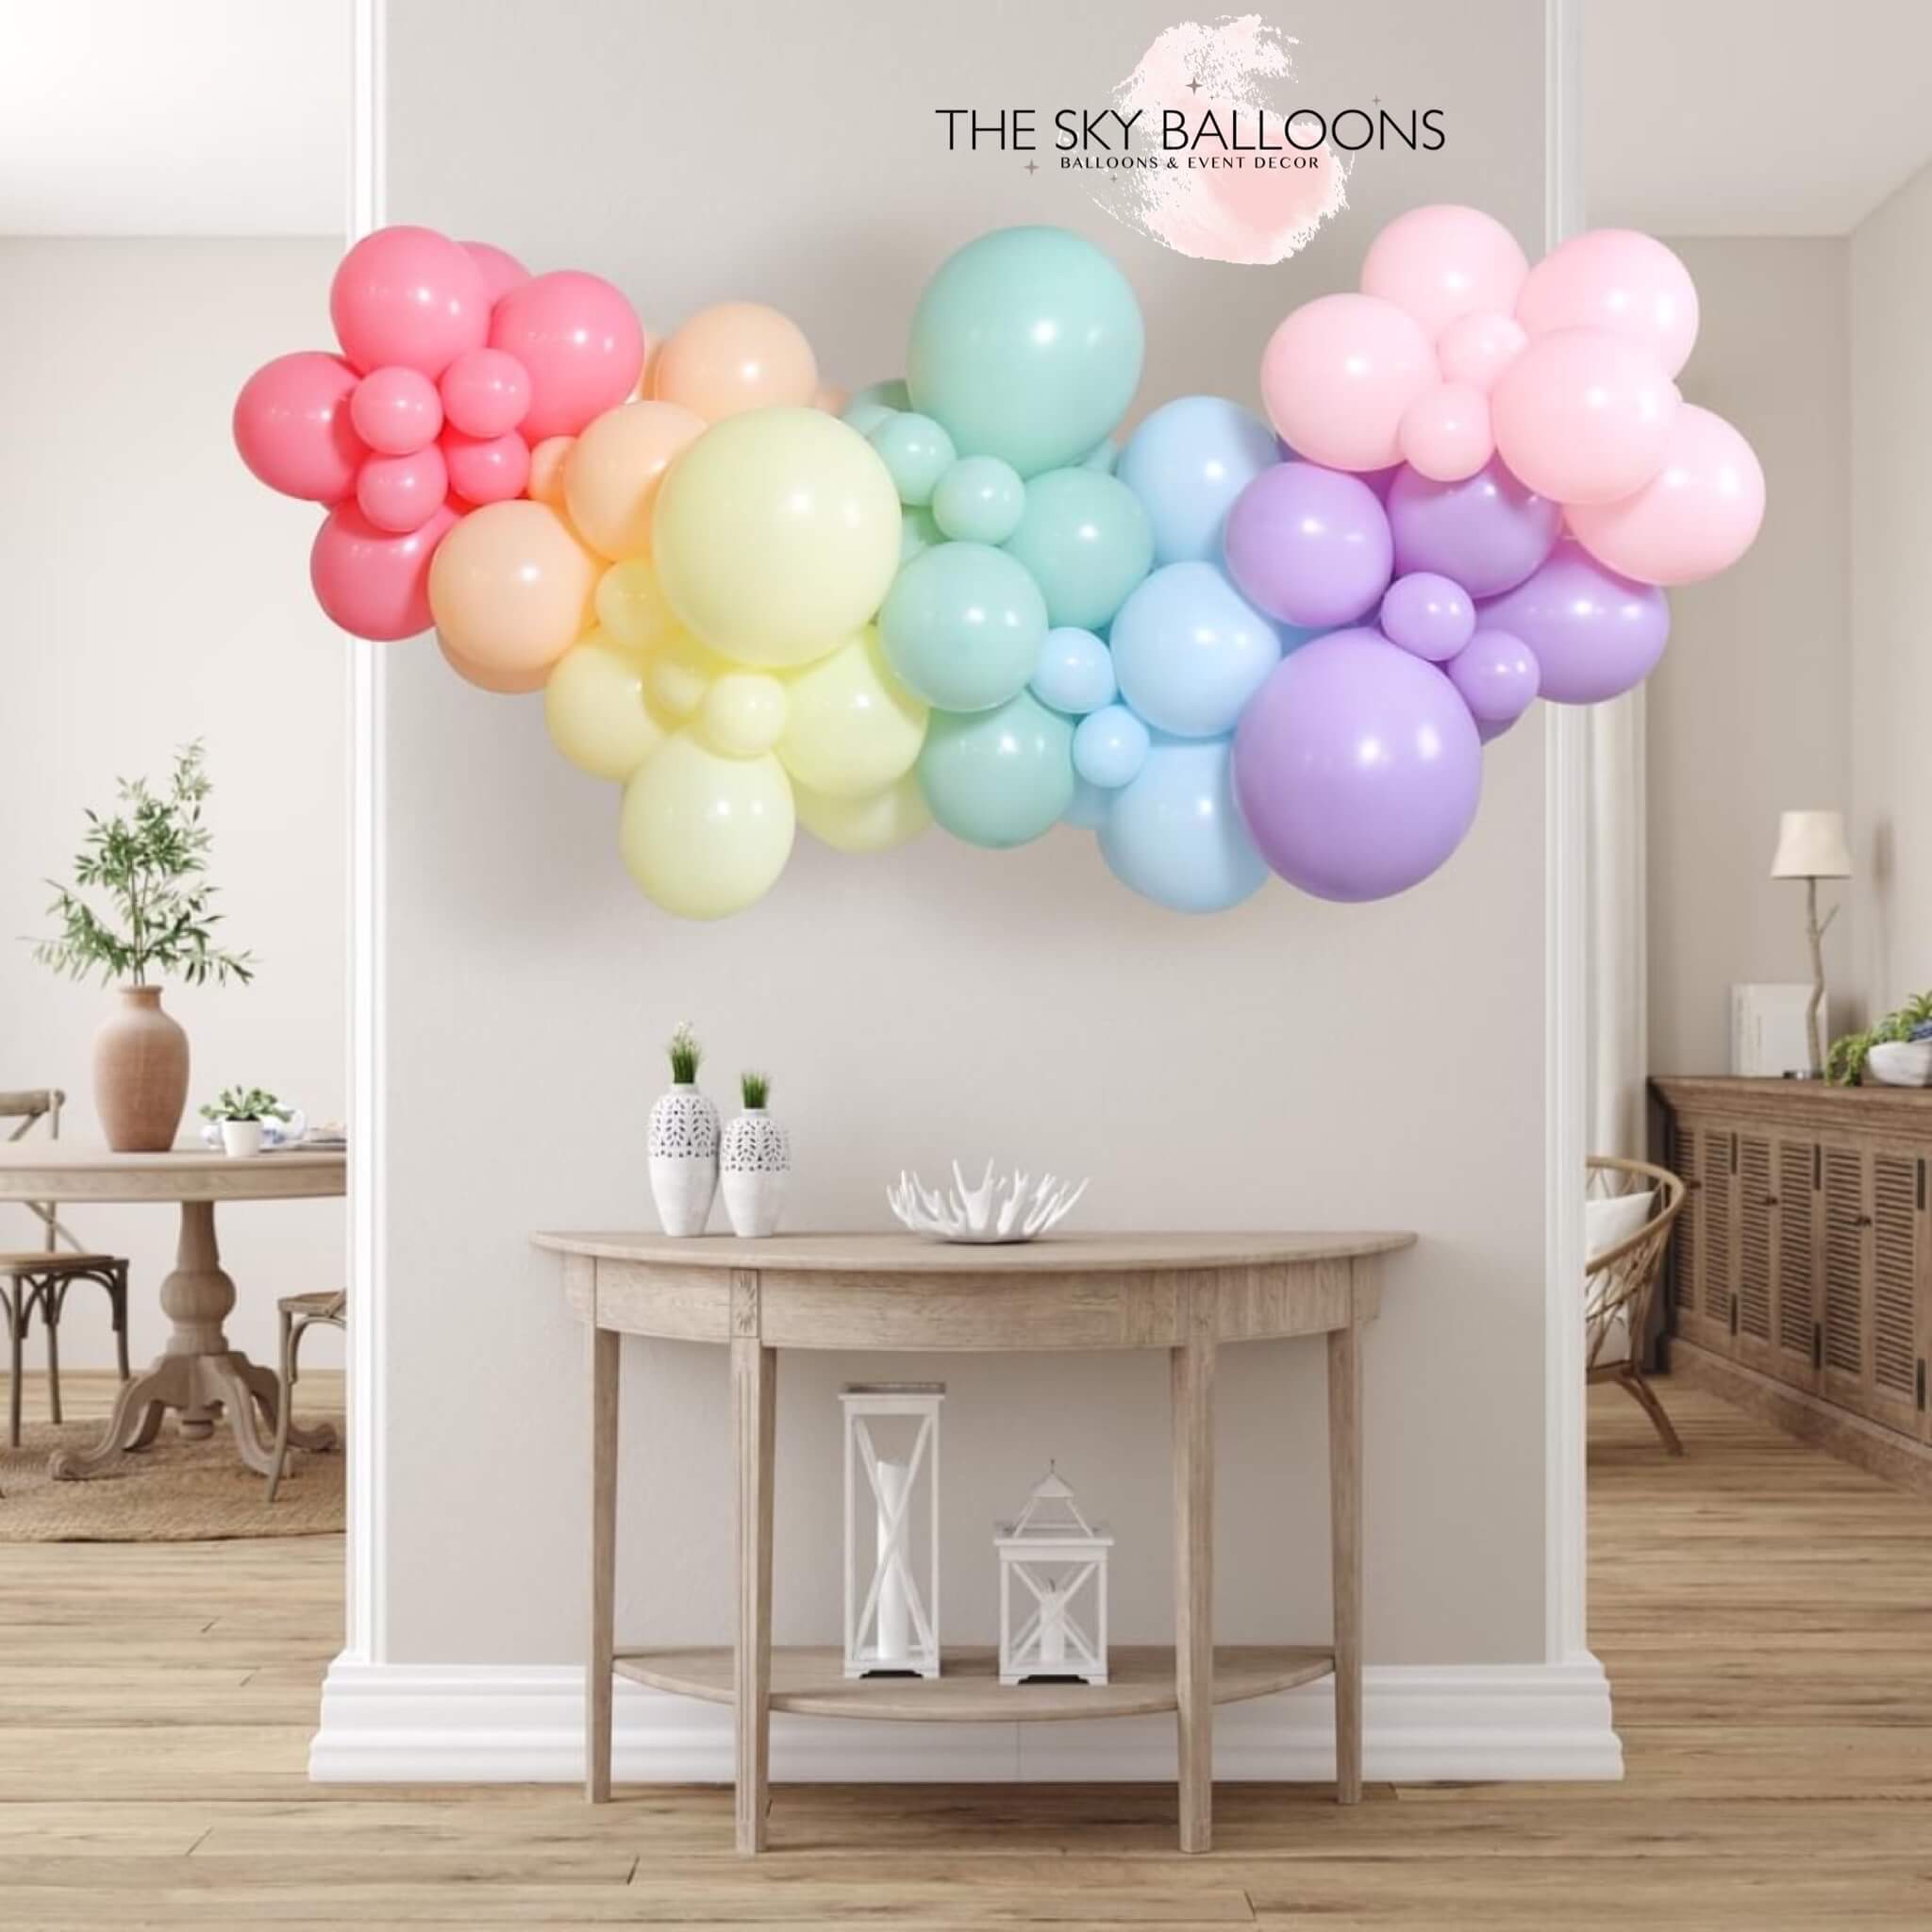 Construction Jumbo Confetti Balloon - Glamfetti